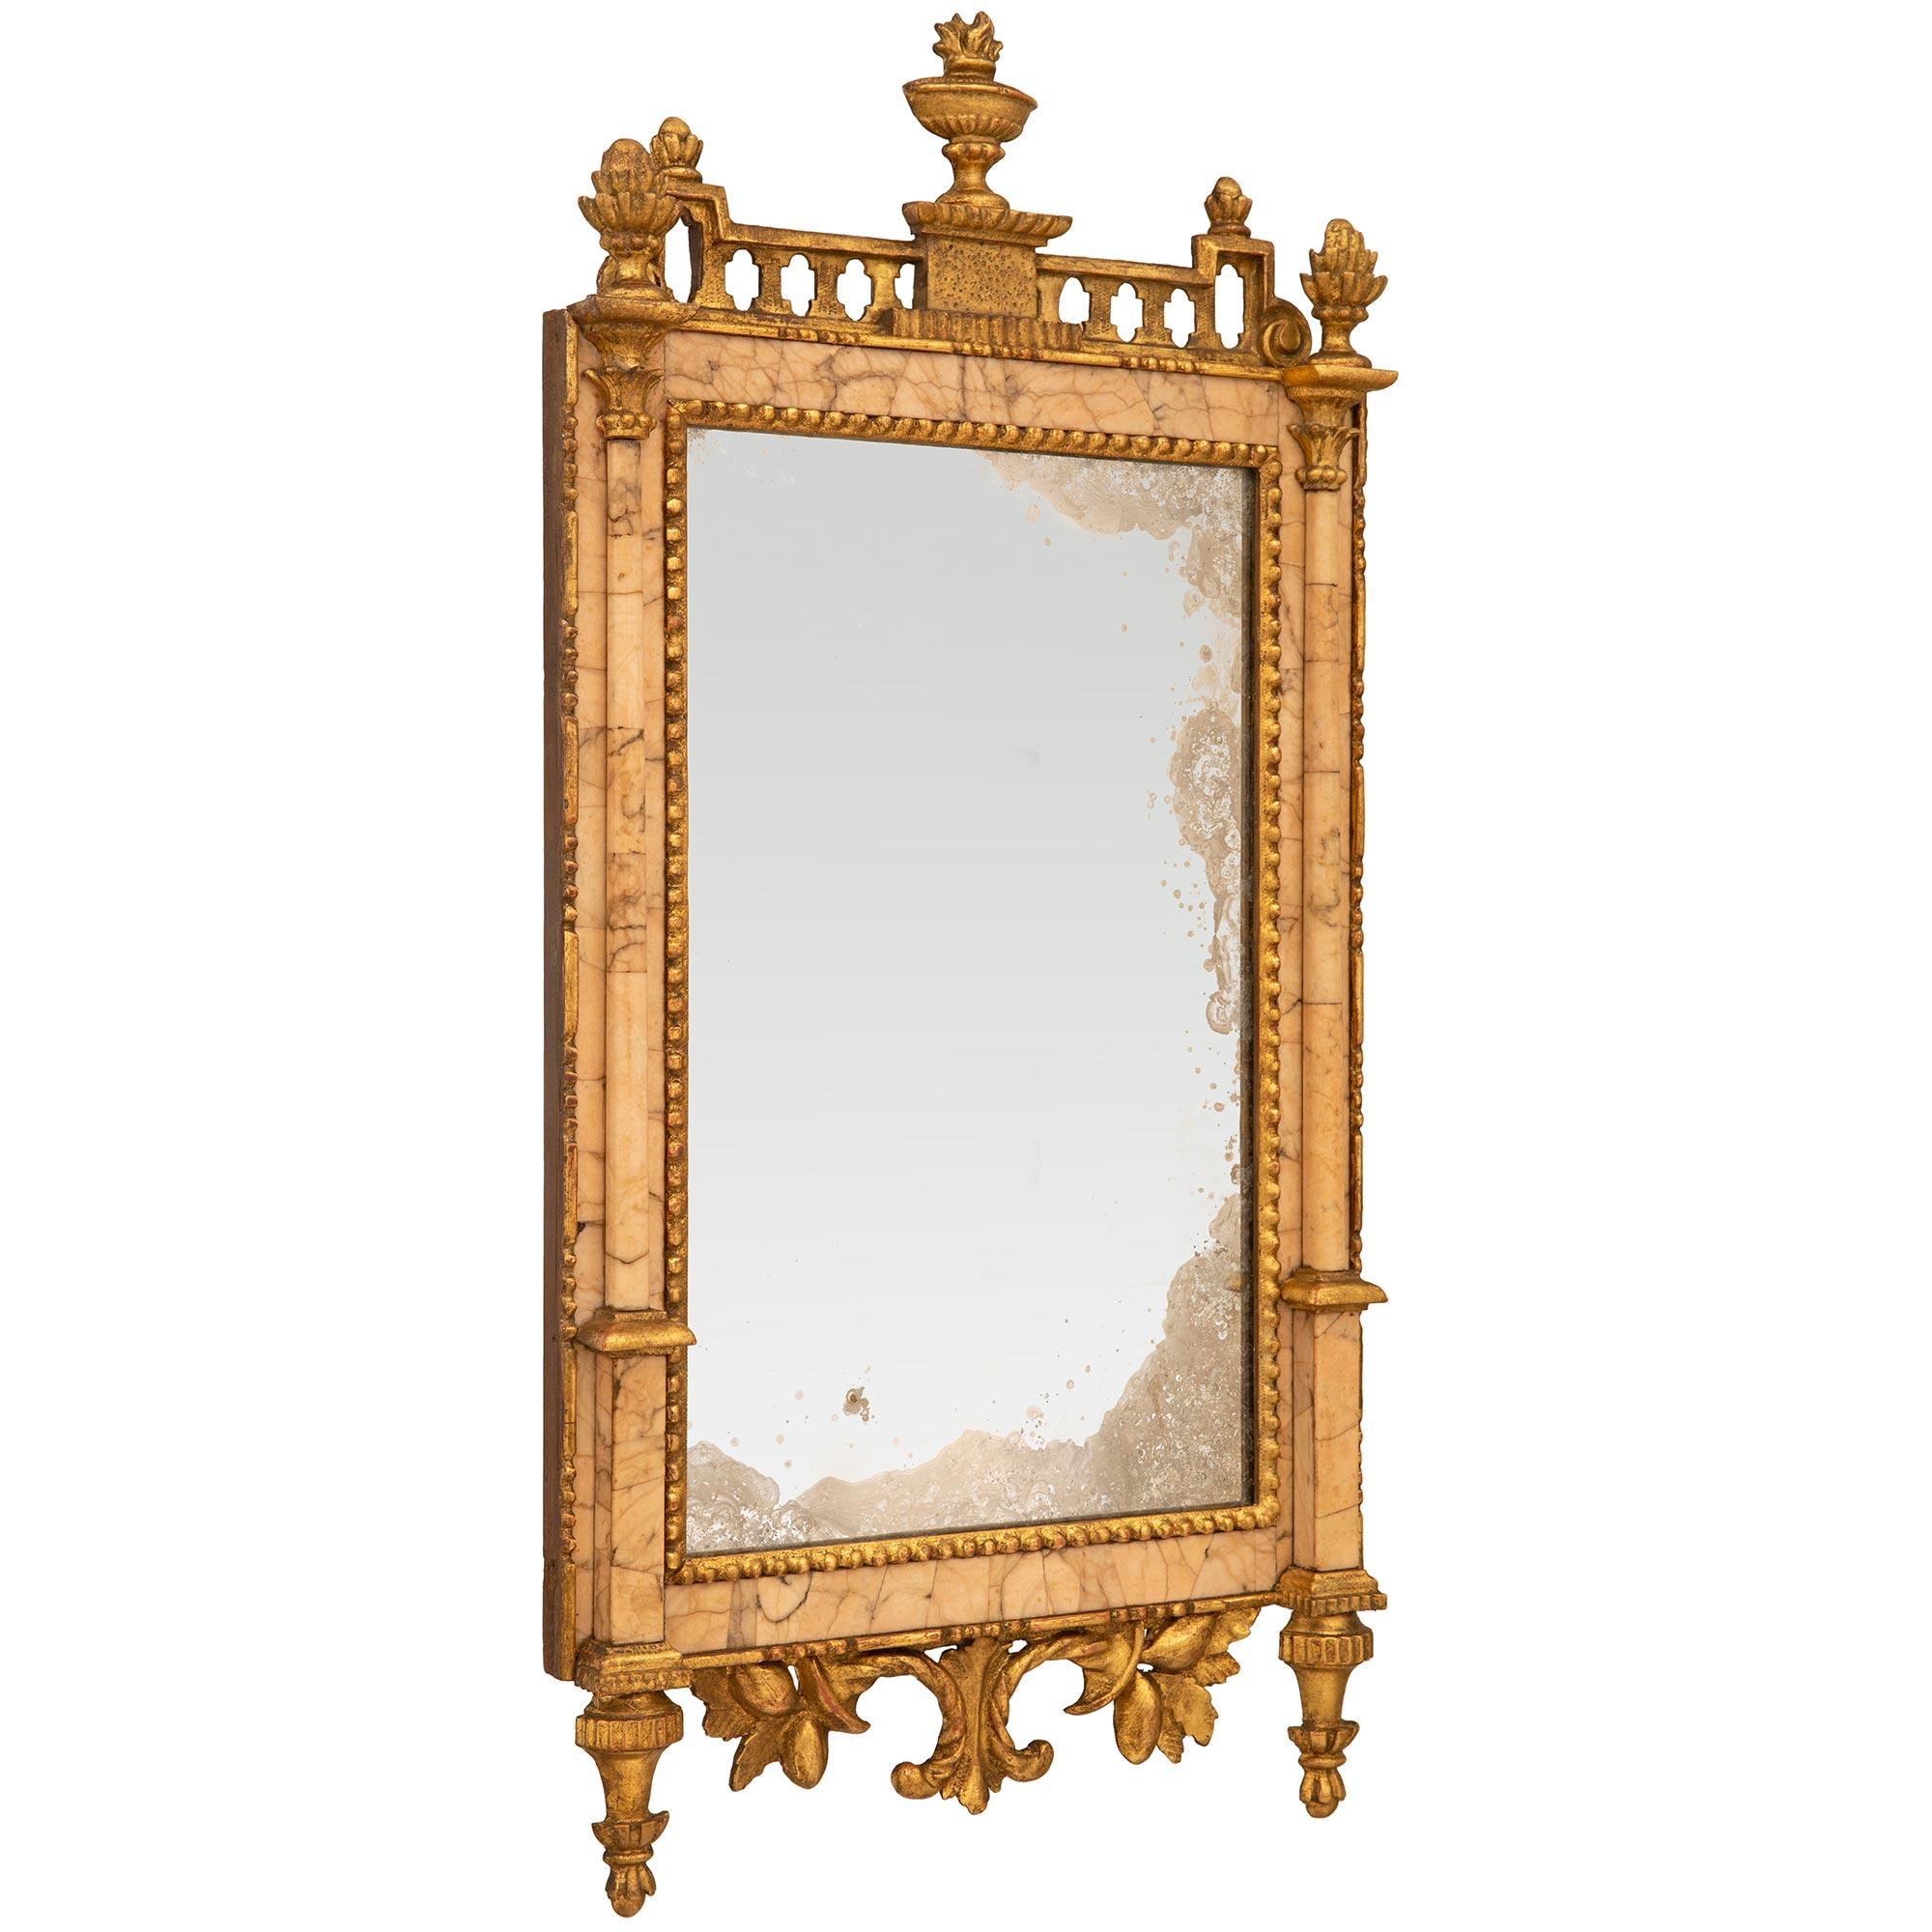 Eine sehr elegante und einzigartige italienische 18. Jahrhundert Louis XVI Zeitraum Giltwood und Lumachella Carnina O Carnacina Marmor Spiegel. Dieser rechteckige Spiegel mit all seiner ursprünglichen Spiegelplatte, Marmor und Vergoldung wird von